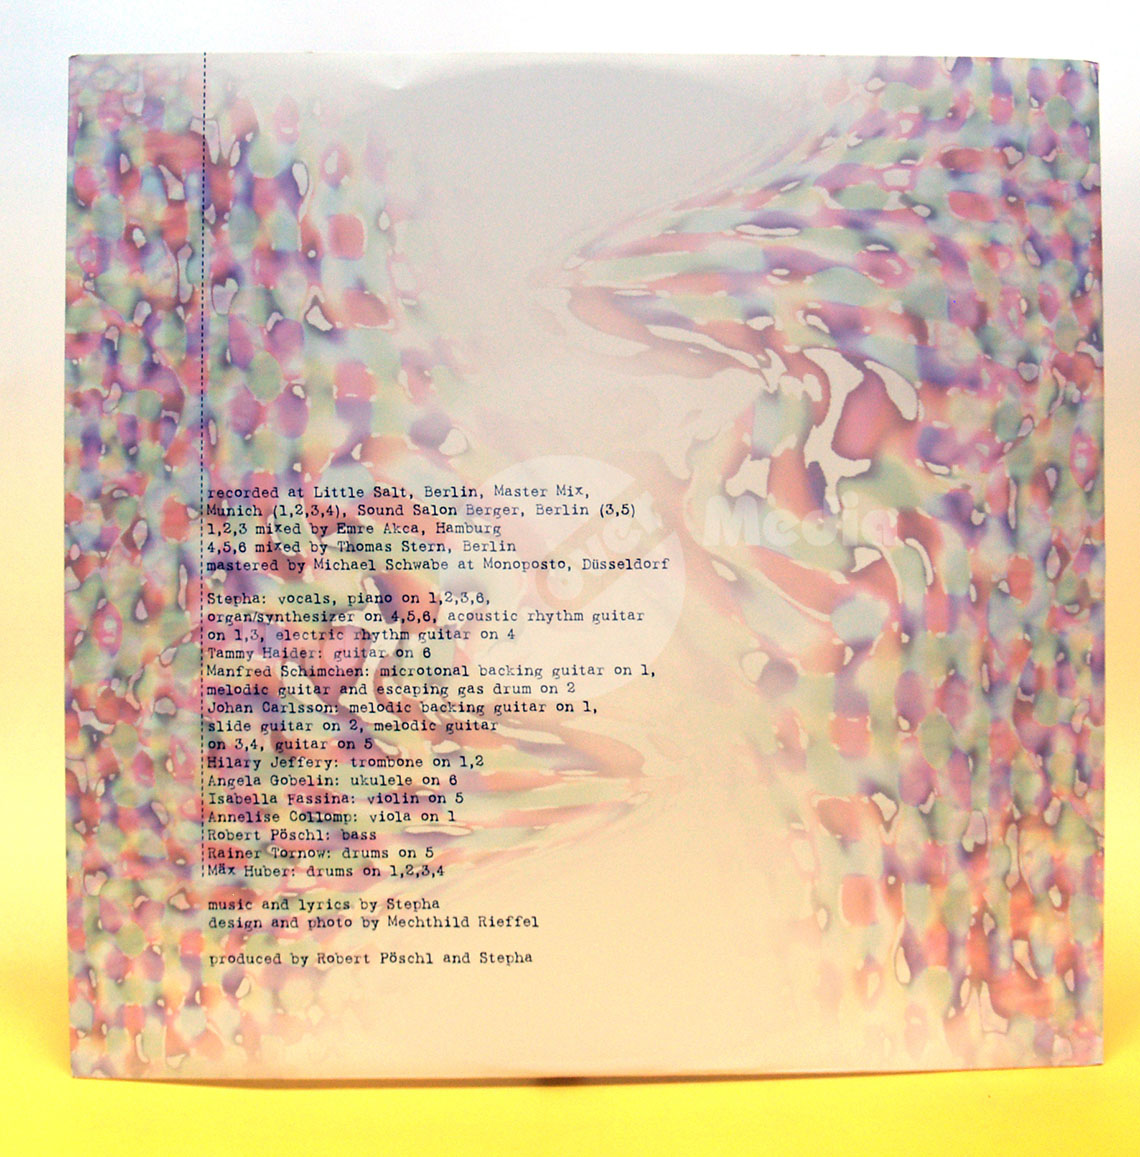 Stepha Schweiger – Dissolve Into (Vinyl LP)